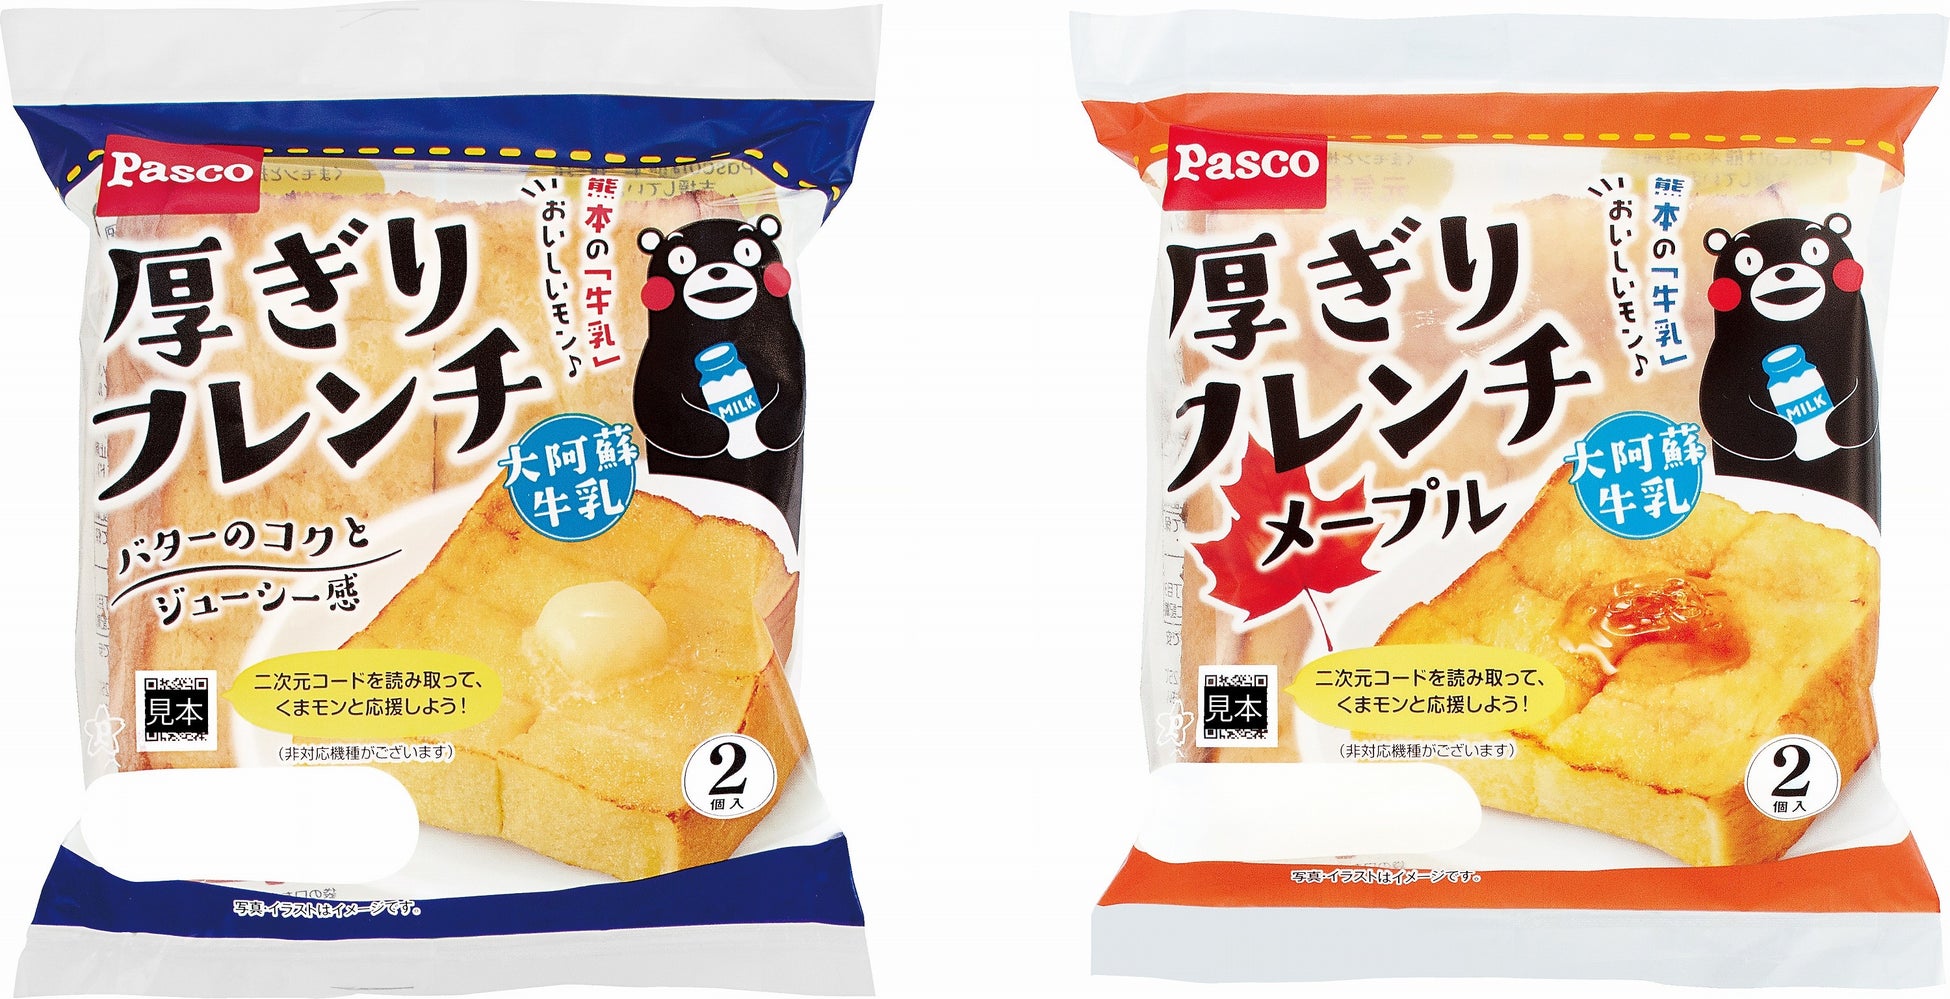 「Pasco 熊本県プロジェクト」にてPascoと熊本県がコラボレーション！くまモンおすすめの熊本県産品を使用した「厚ぎりフレンチ」2種を4月1日新発売